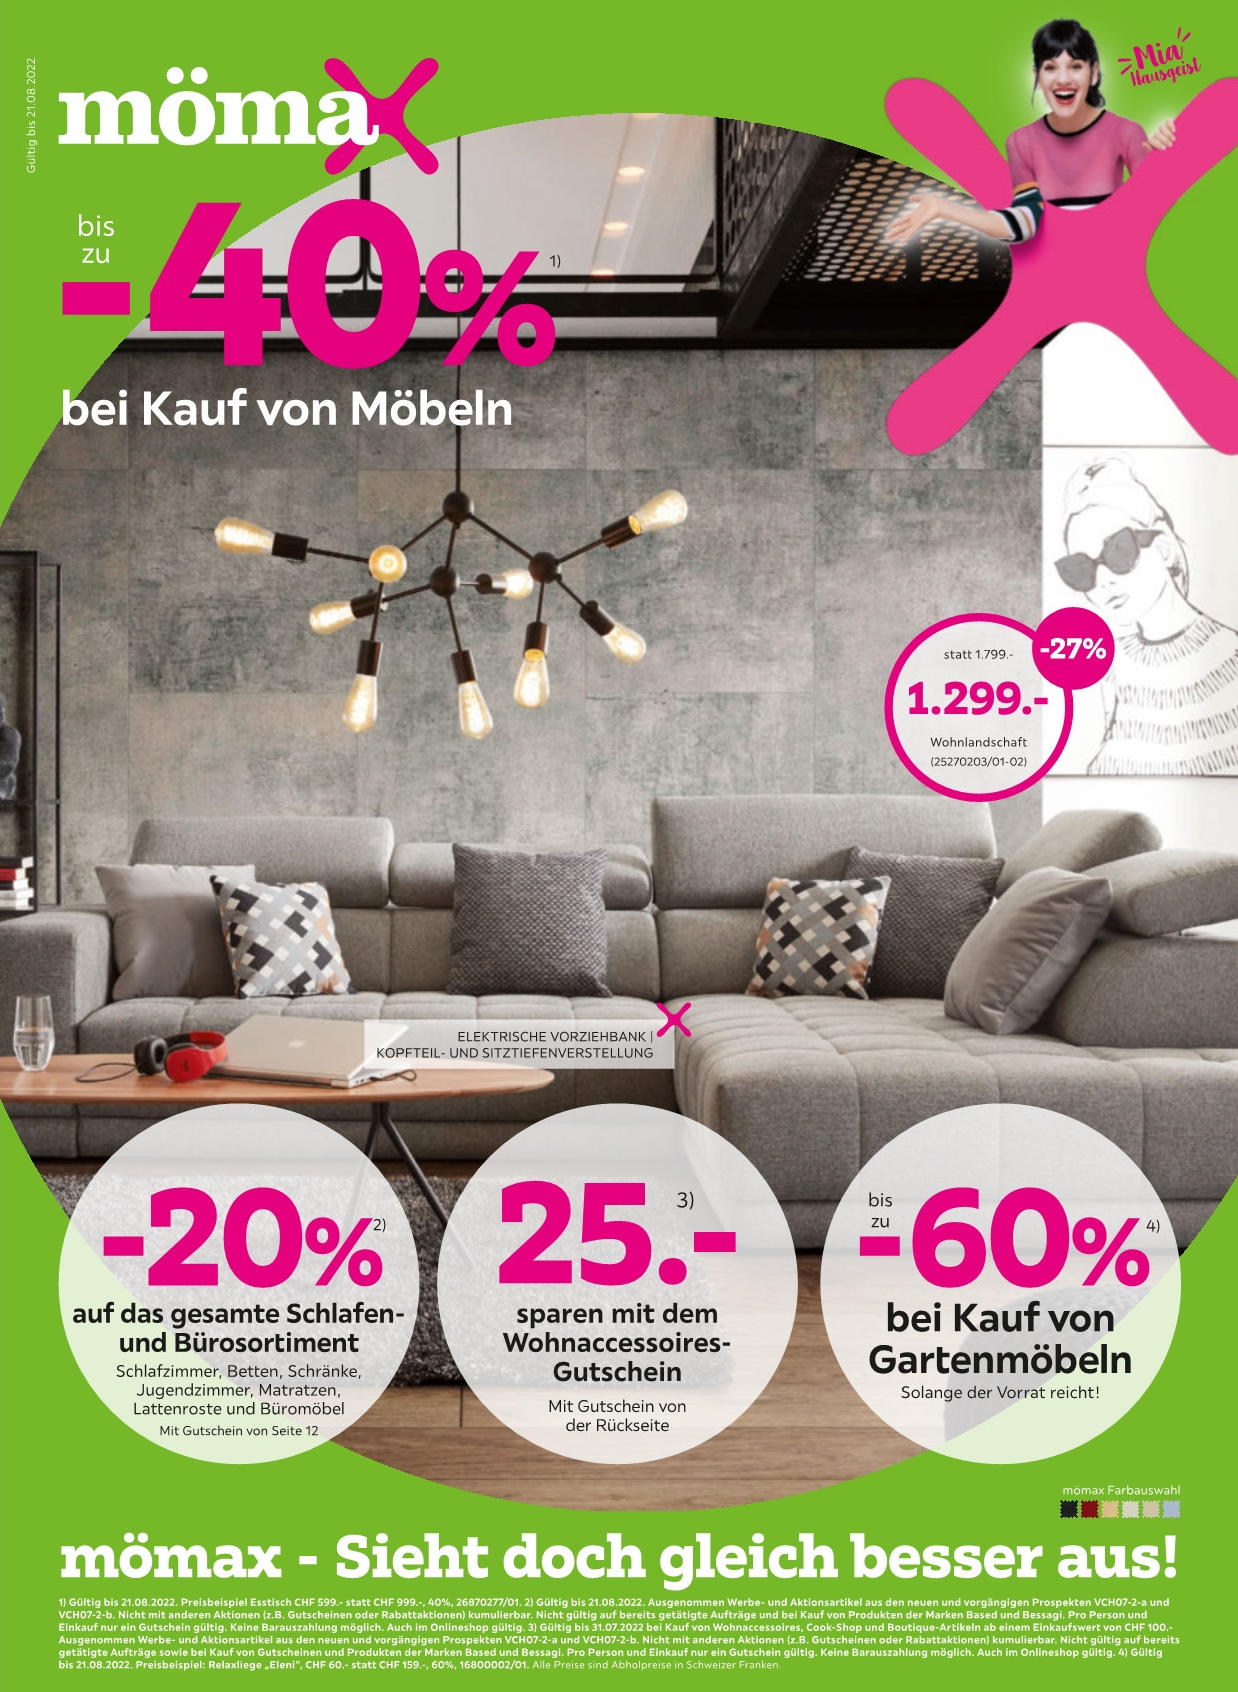 Bis zu -40% bei Kauf von Möbeln